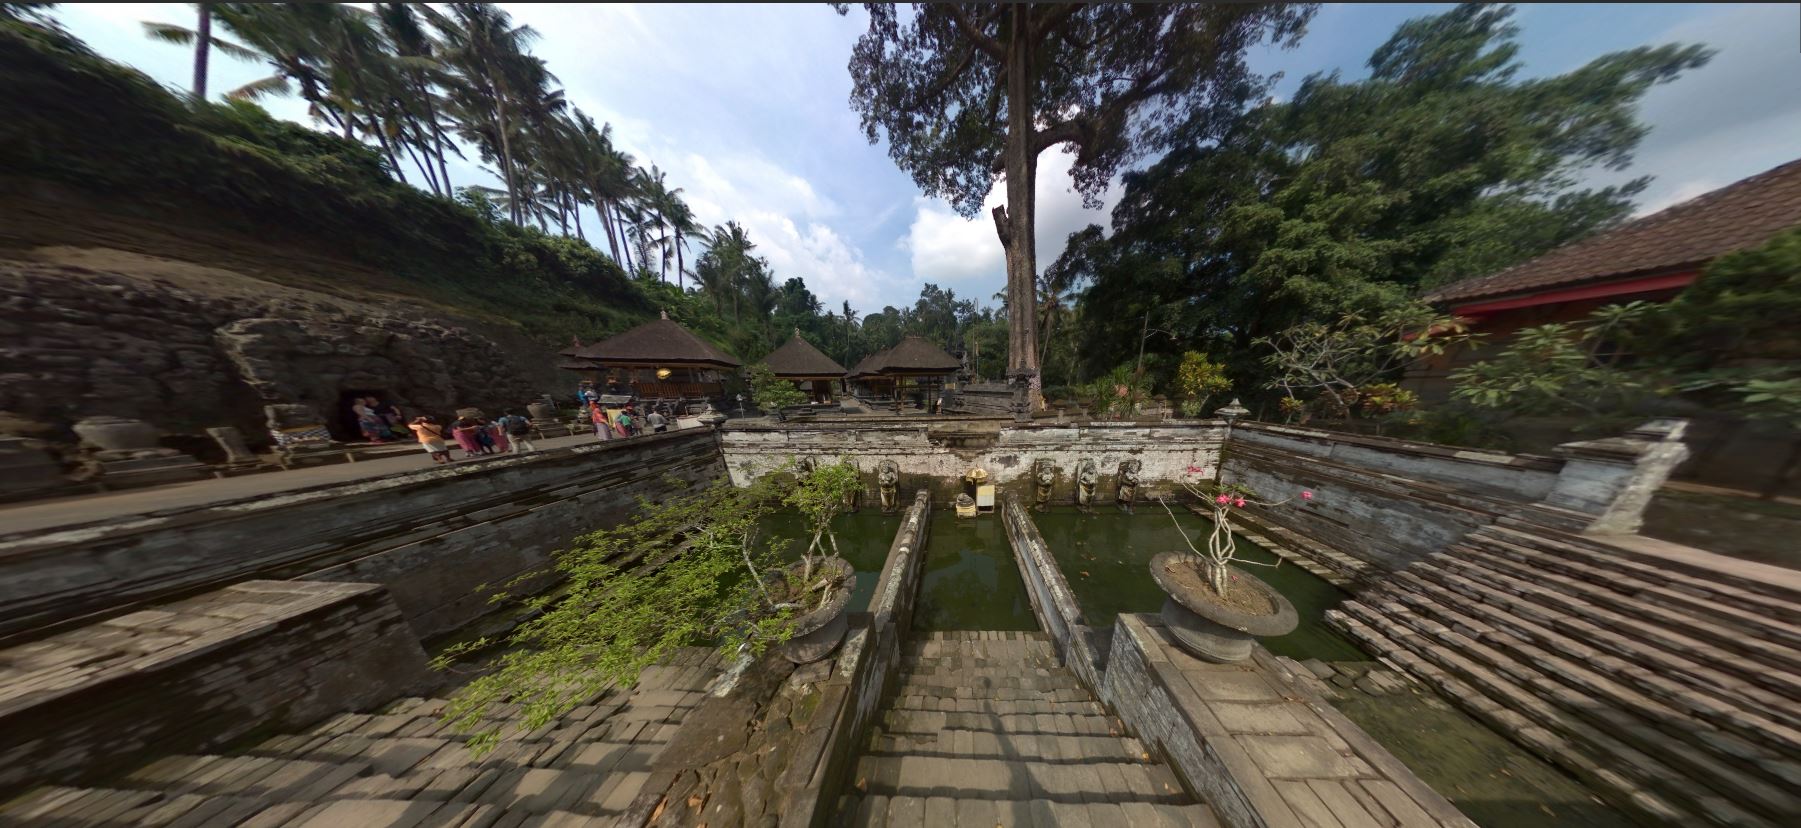 Foto 360 Templos de Bali